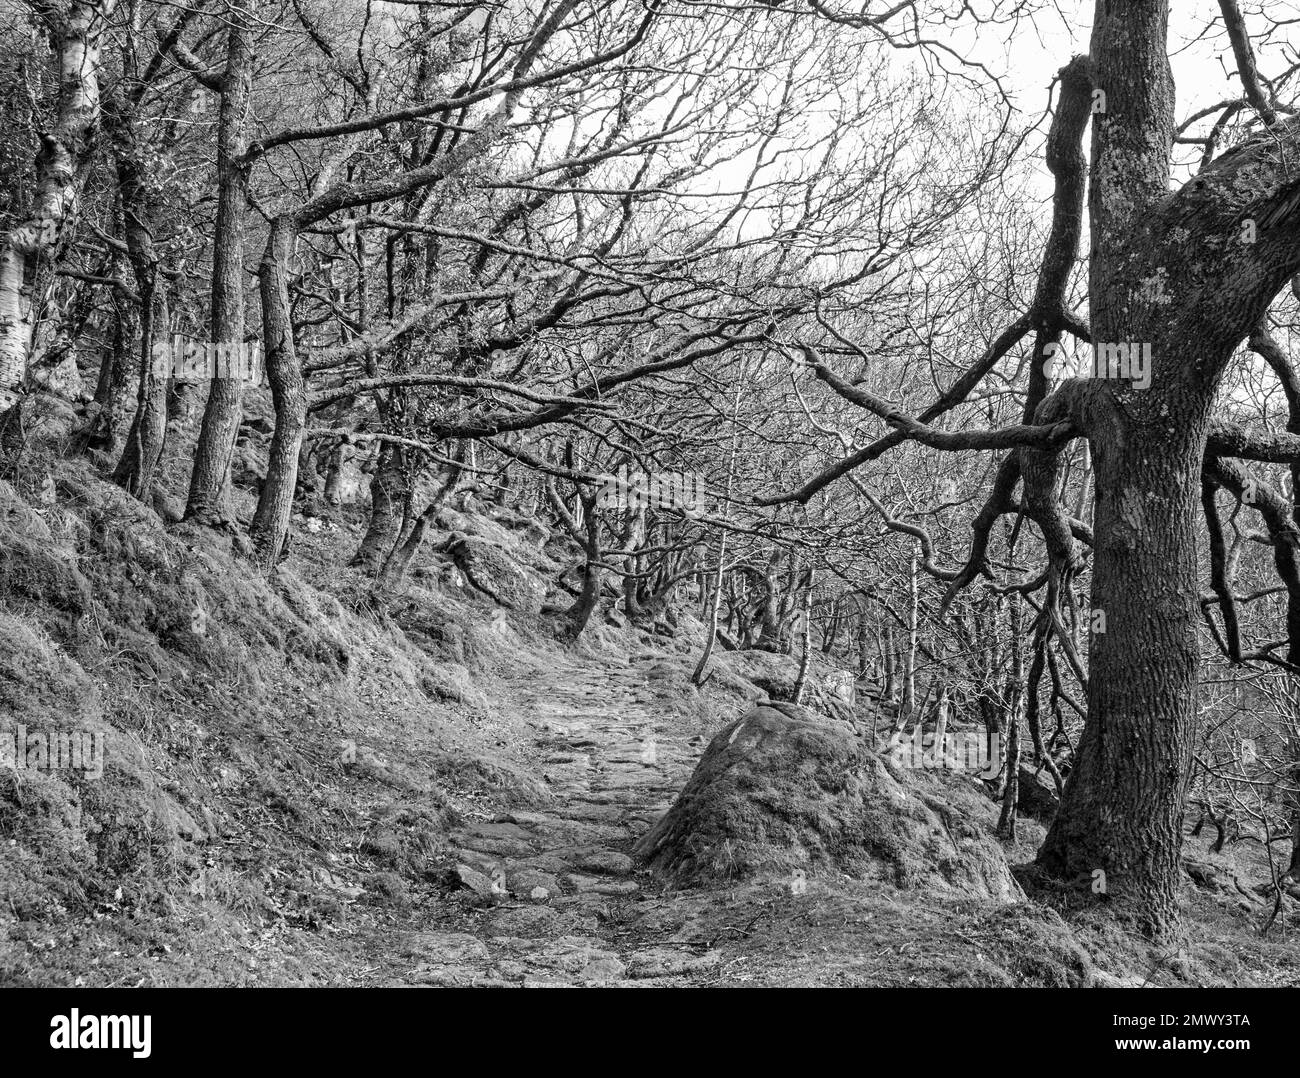 Waldgebiete in den Shaugh Woods am Rande von Dartmoor. Ein Weg offenbart eine industrielle Vergangenheit. Stockfoto